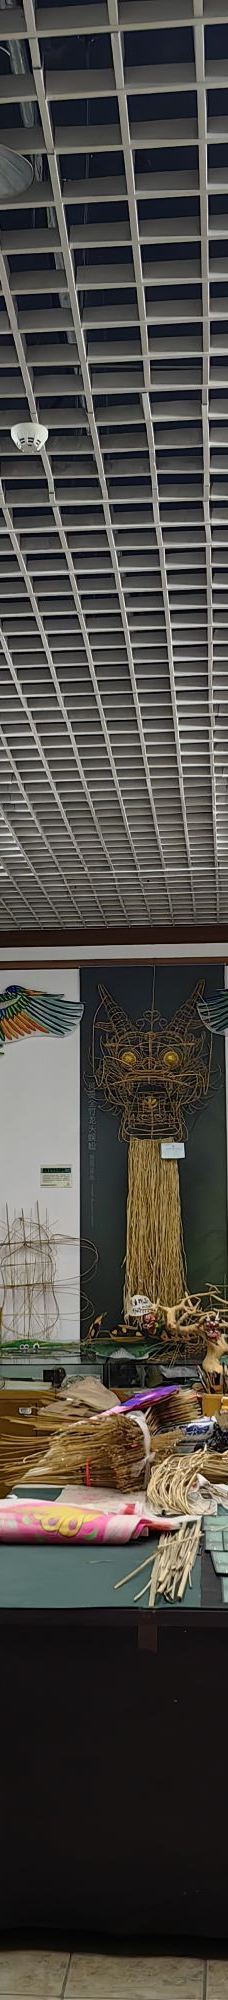 潍坊风筝博物馆-潍坊-飞翔的飞